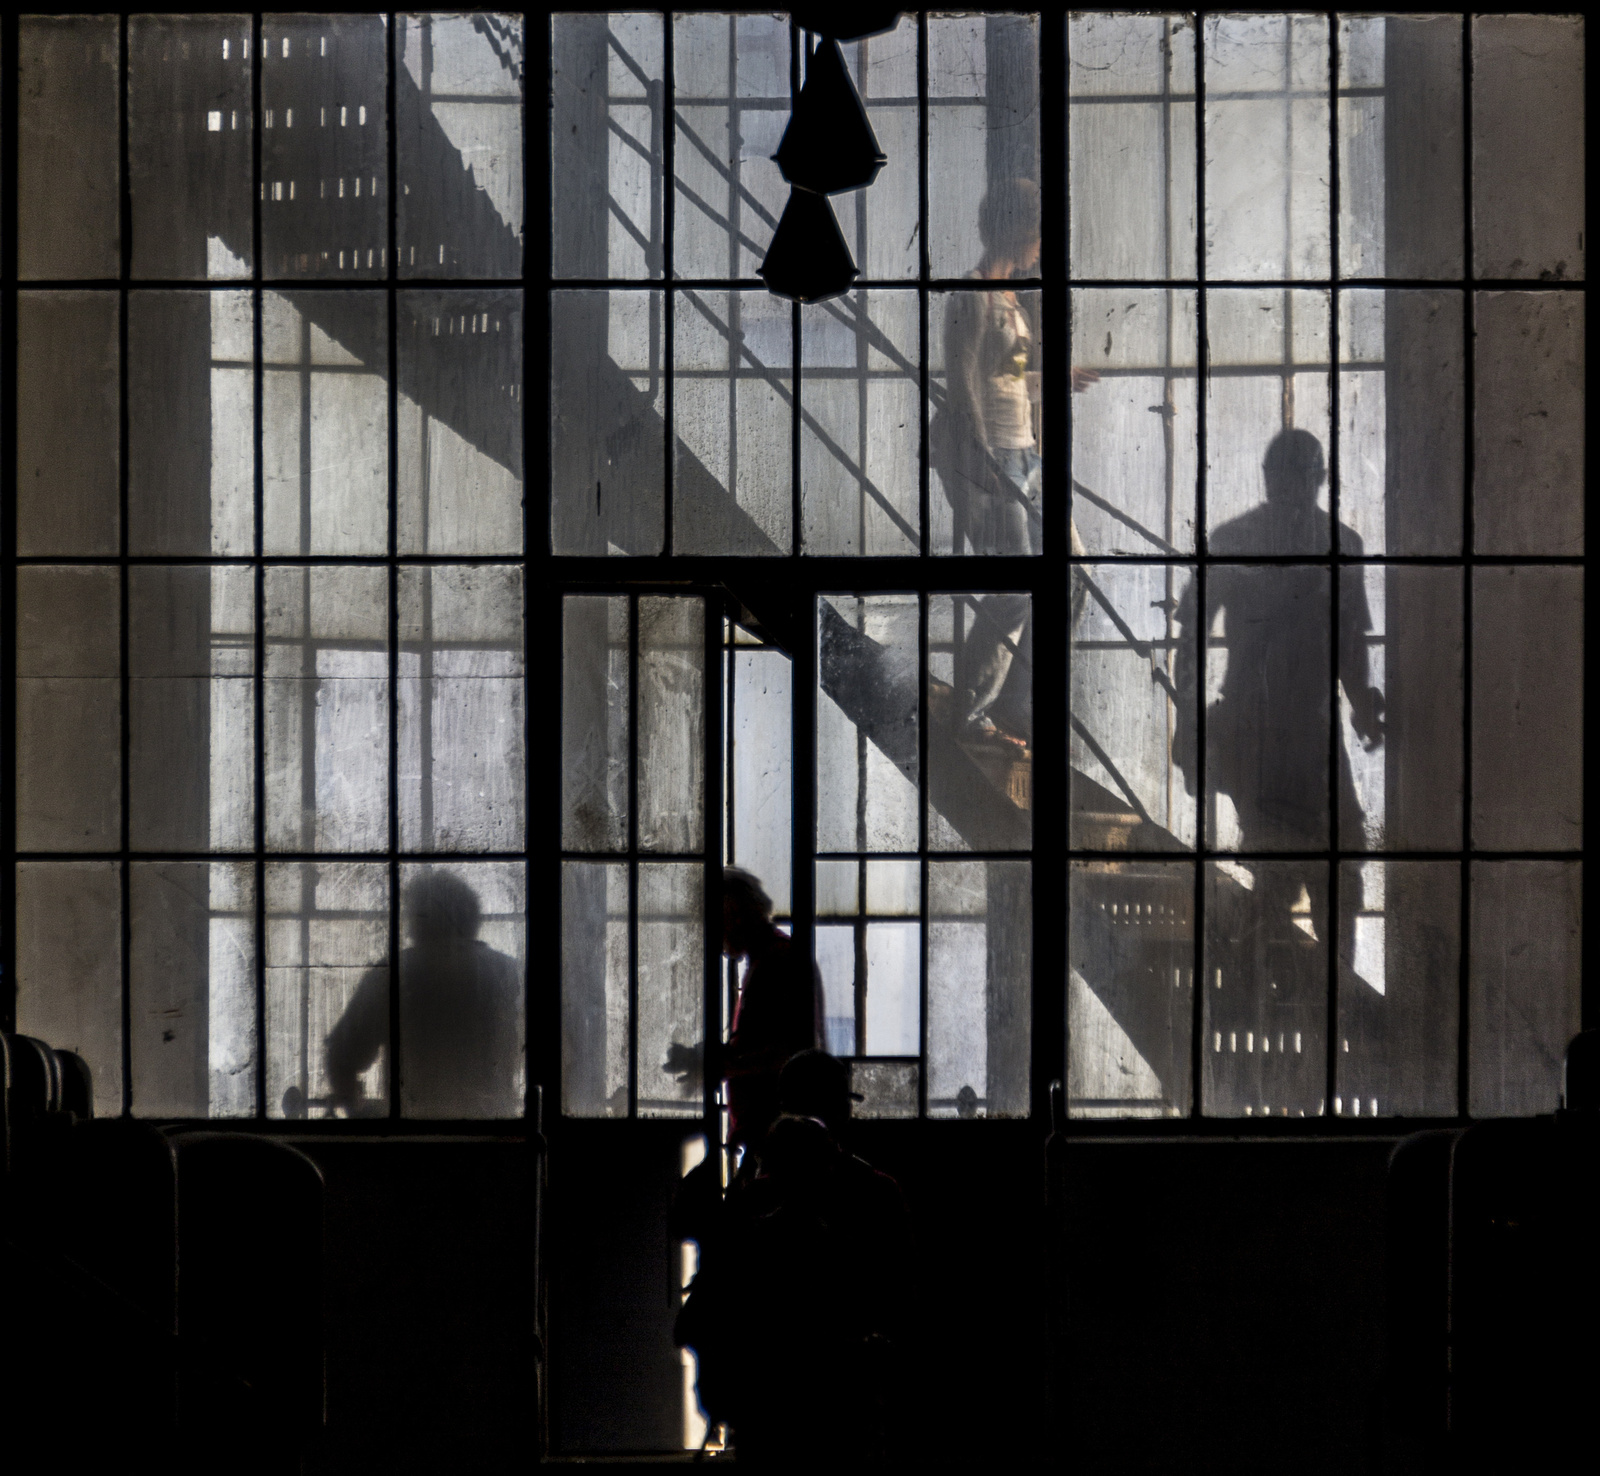 Árnyak a lépcsőházban, 2013, Konta Gábor, a fény és árnyék kettő